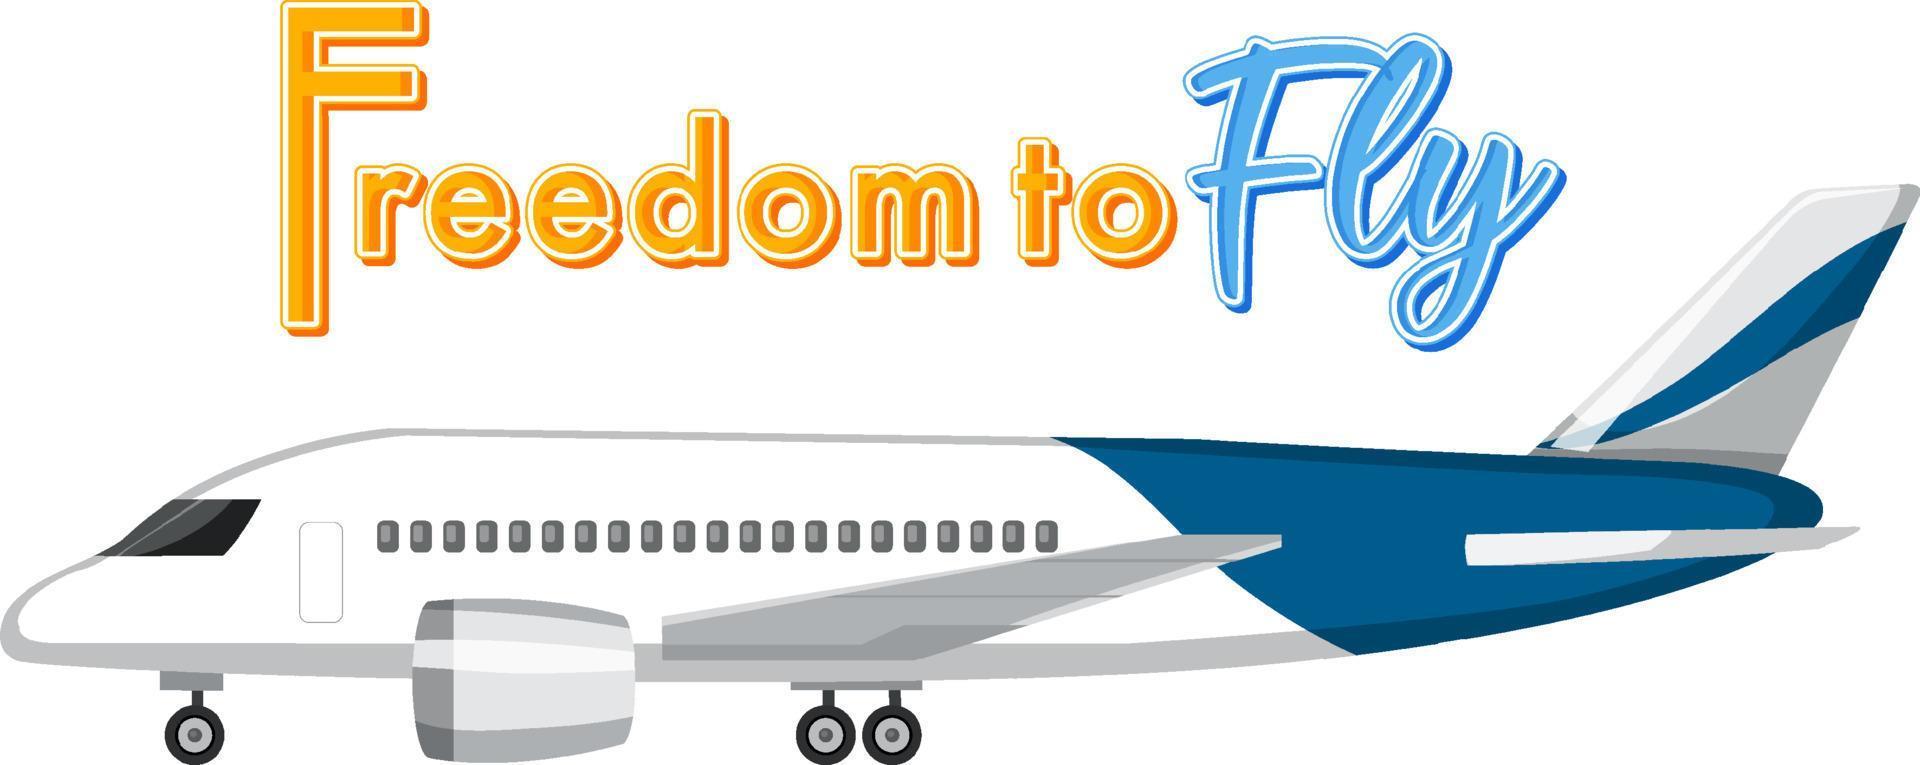 vrijheid om typografieontwerp te vliegen met vliegtuig vector